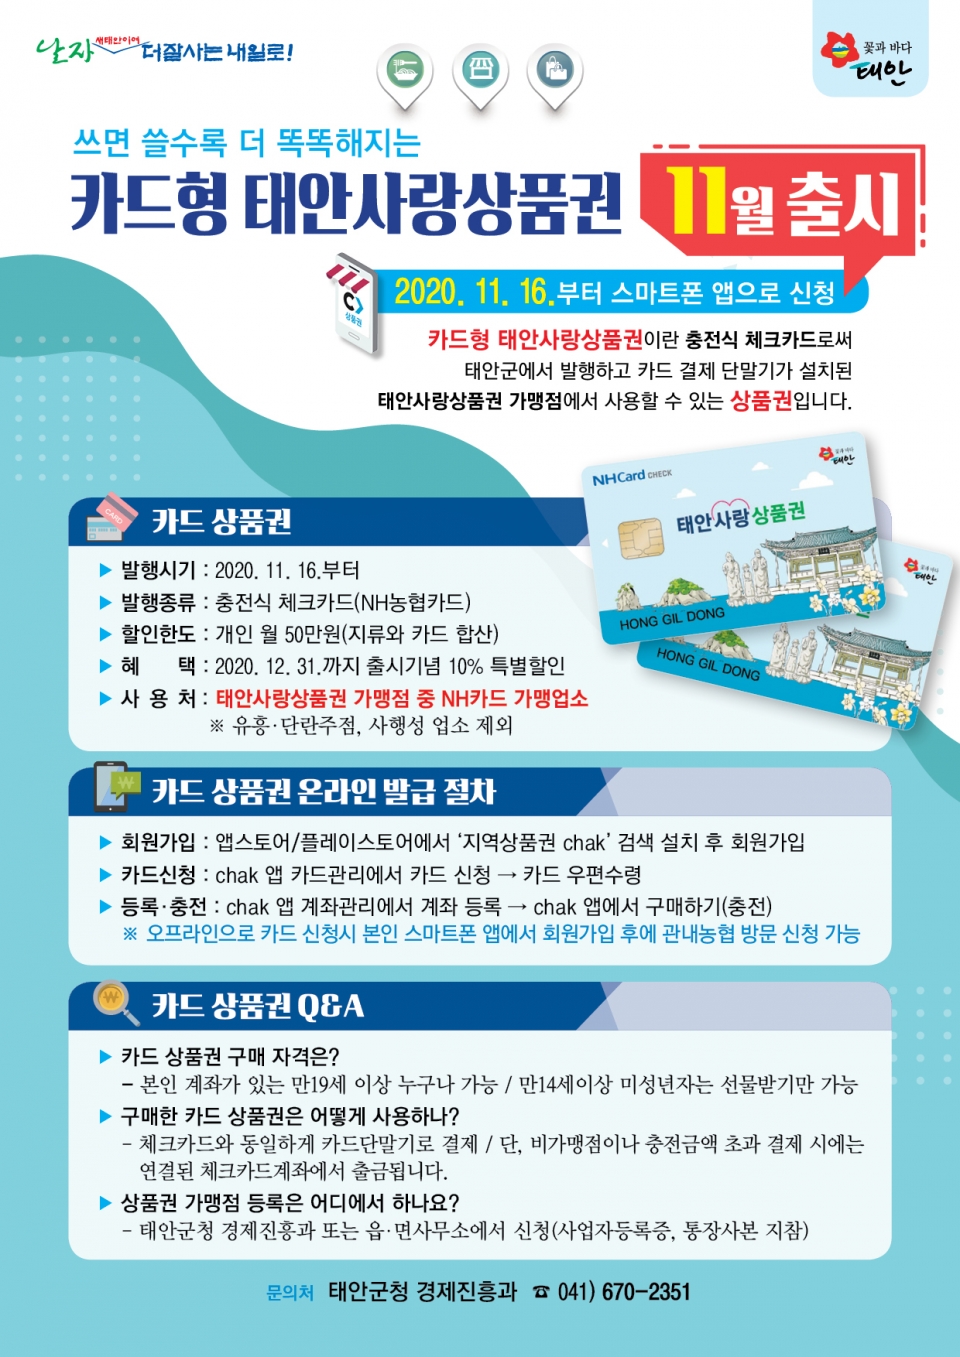 태안군이 ‘카드형 태안사랑상품권’을 이달 16일부터 출시한다.